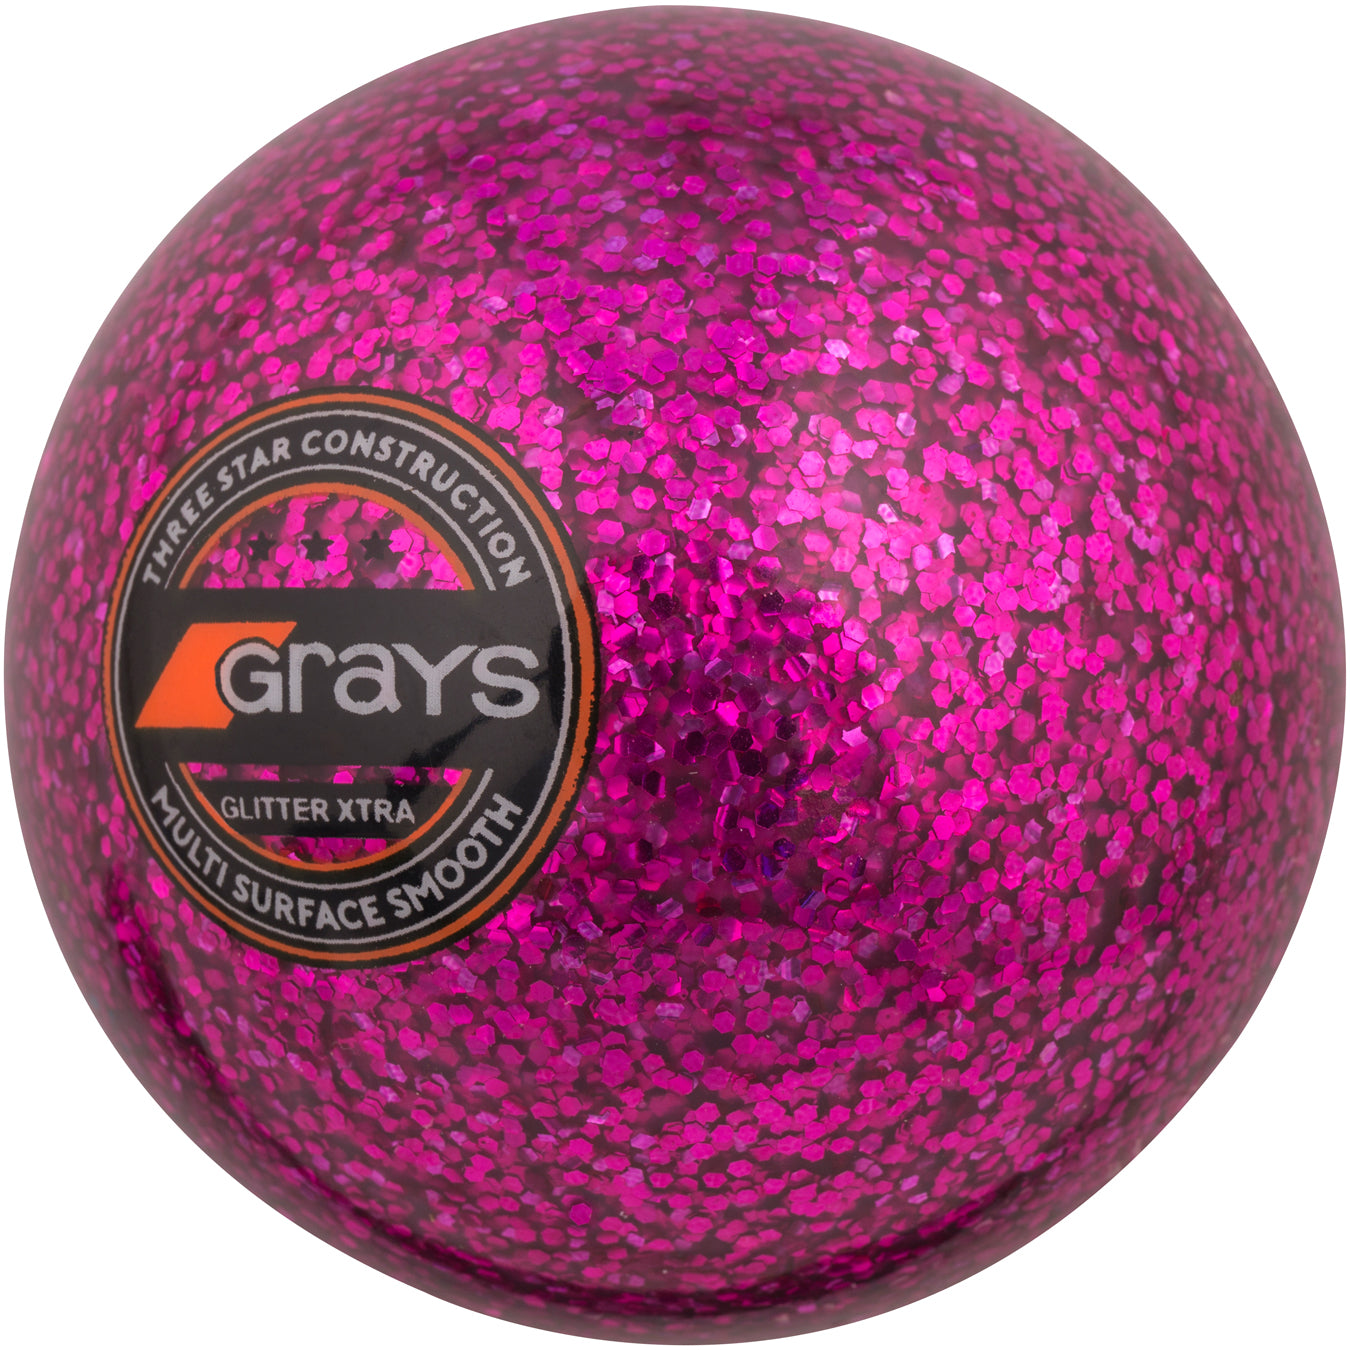 Grays Glitter Ball